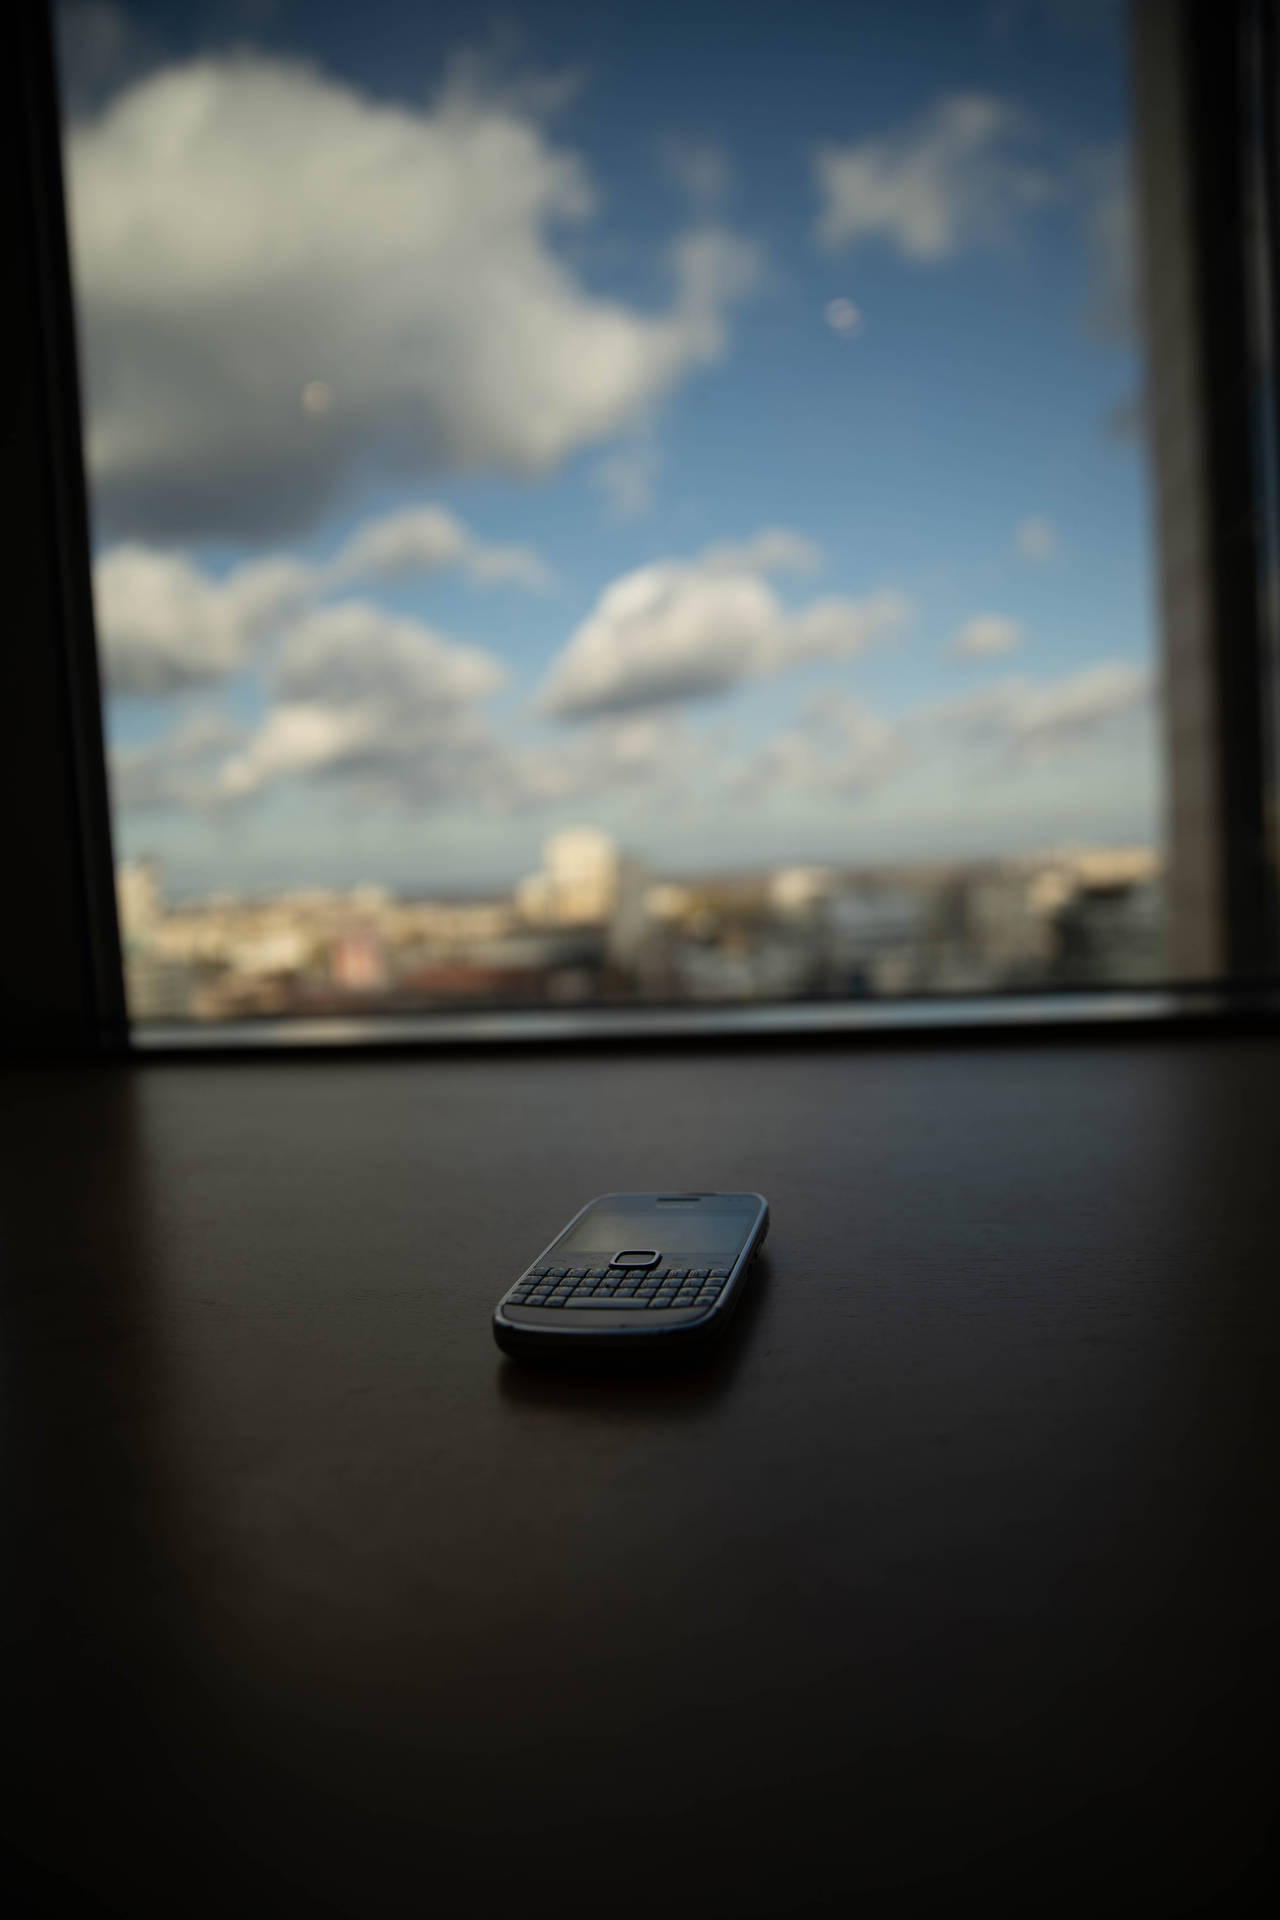 Nokia E71 Cloudy Sky Background